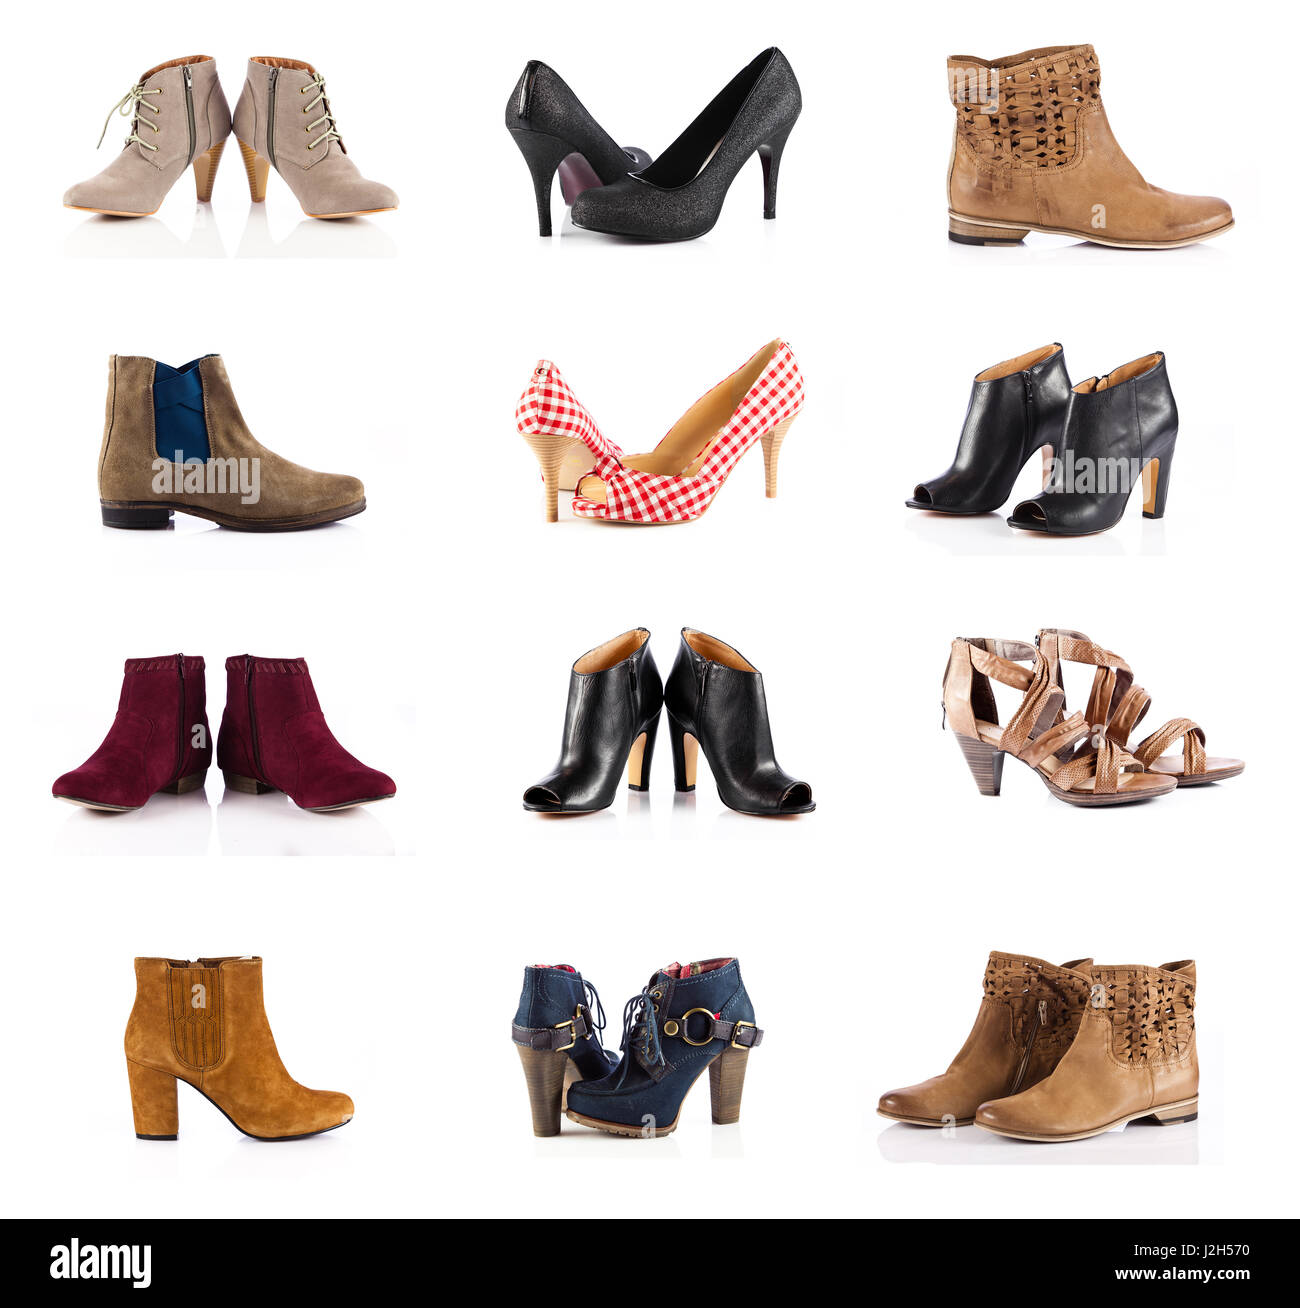 Frauen Schuhe. weiblichen Schuhe in weiß. Sammlung von verschiedenen Arten  von weiblichen Schuhe Stockfotografie - Alamy